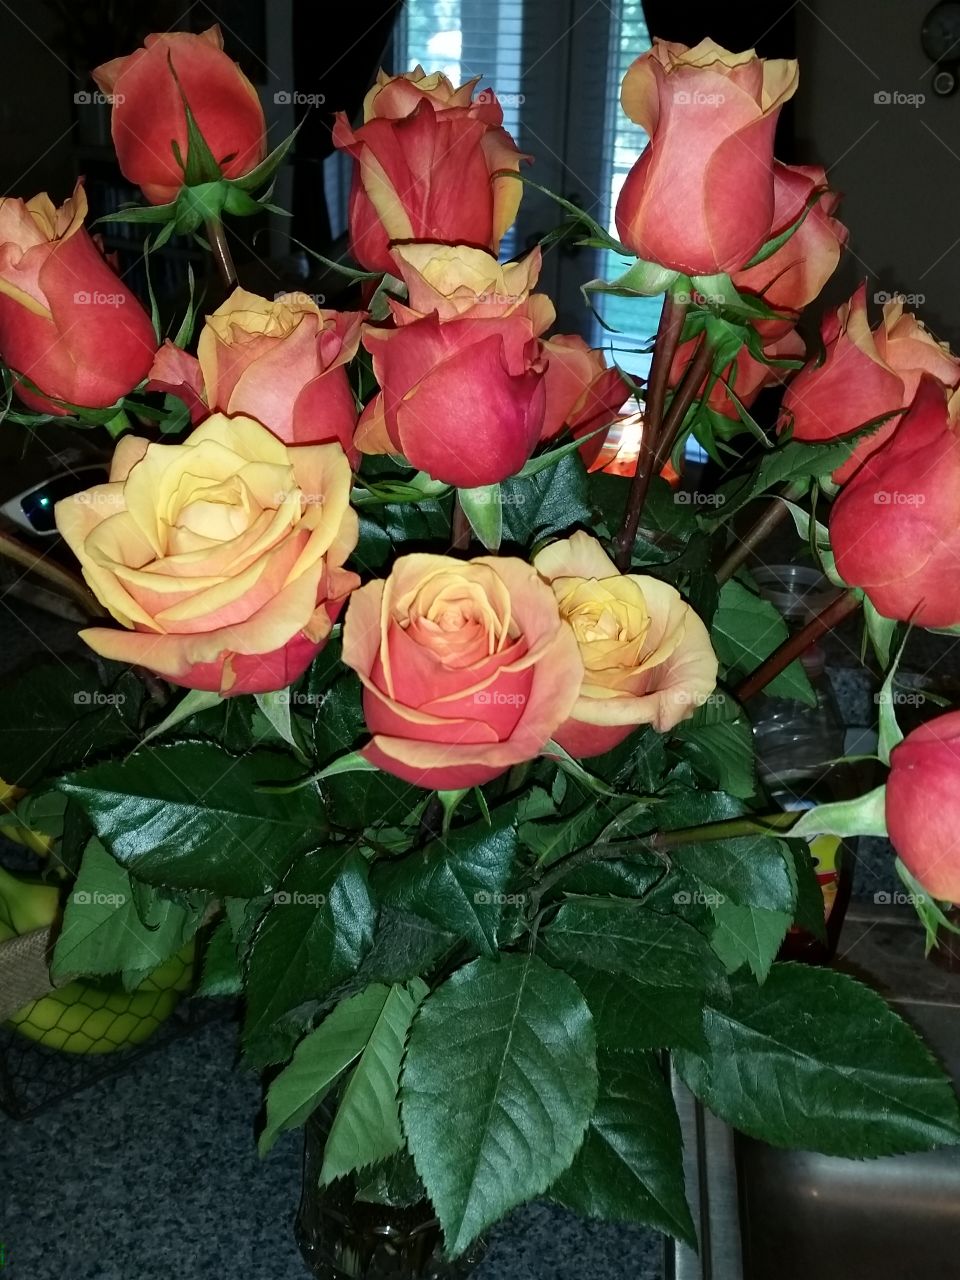 2 dozen roses